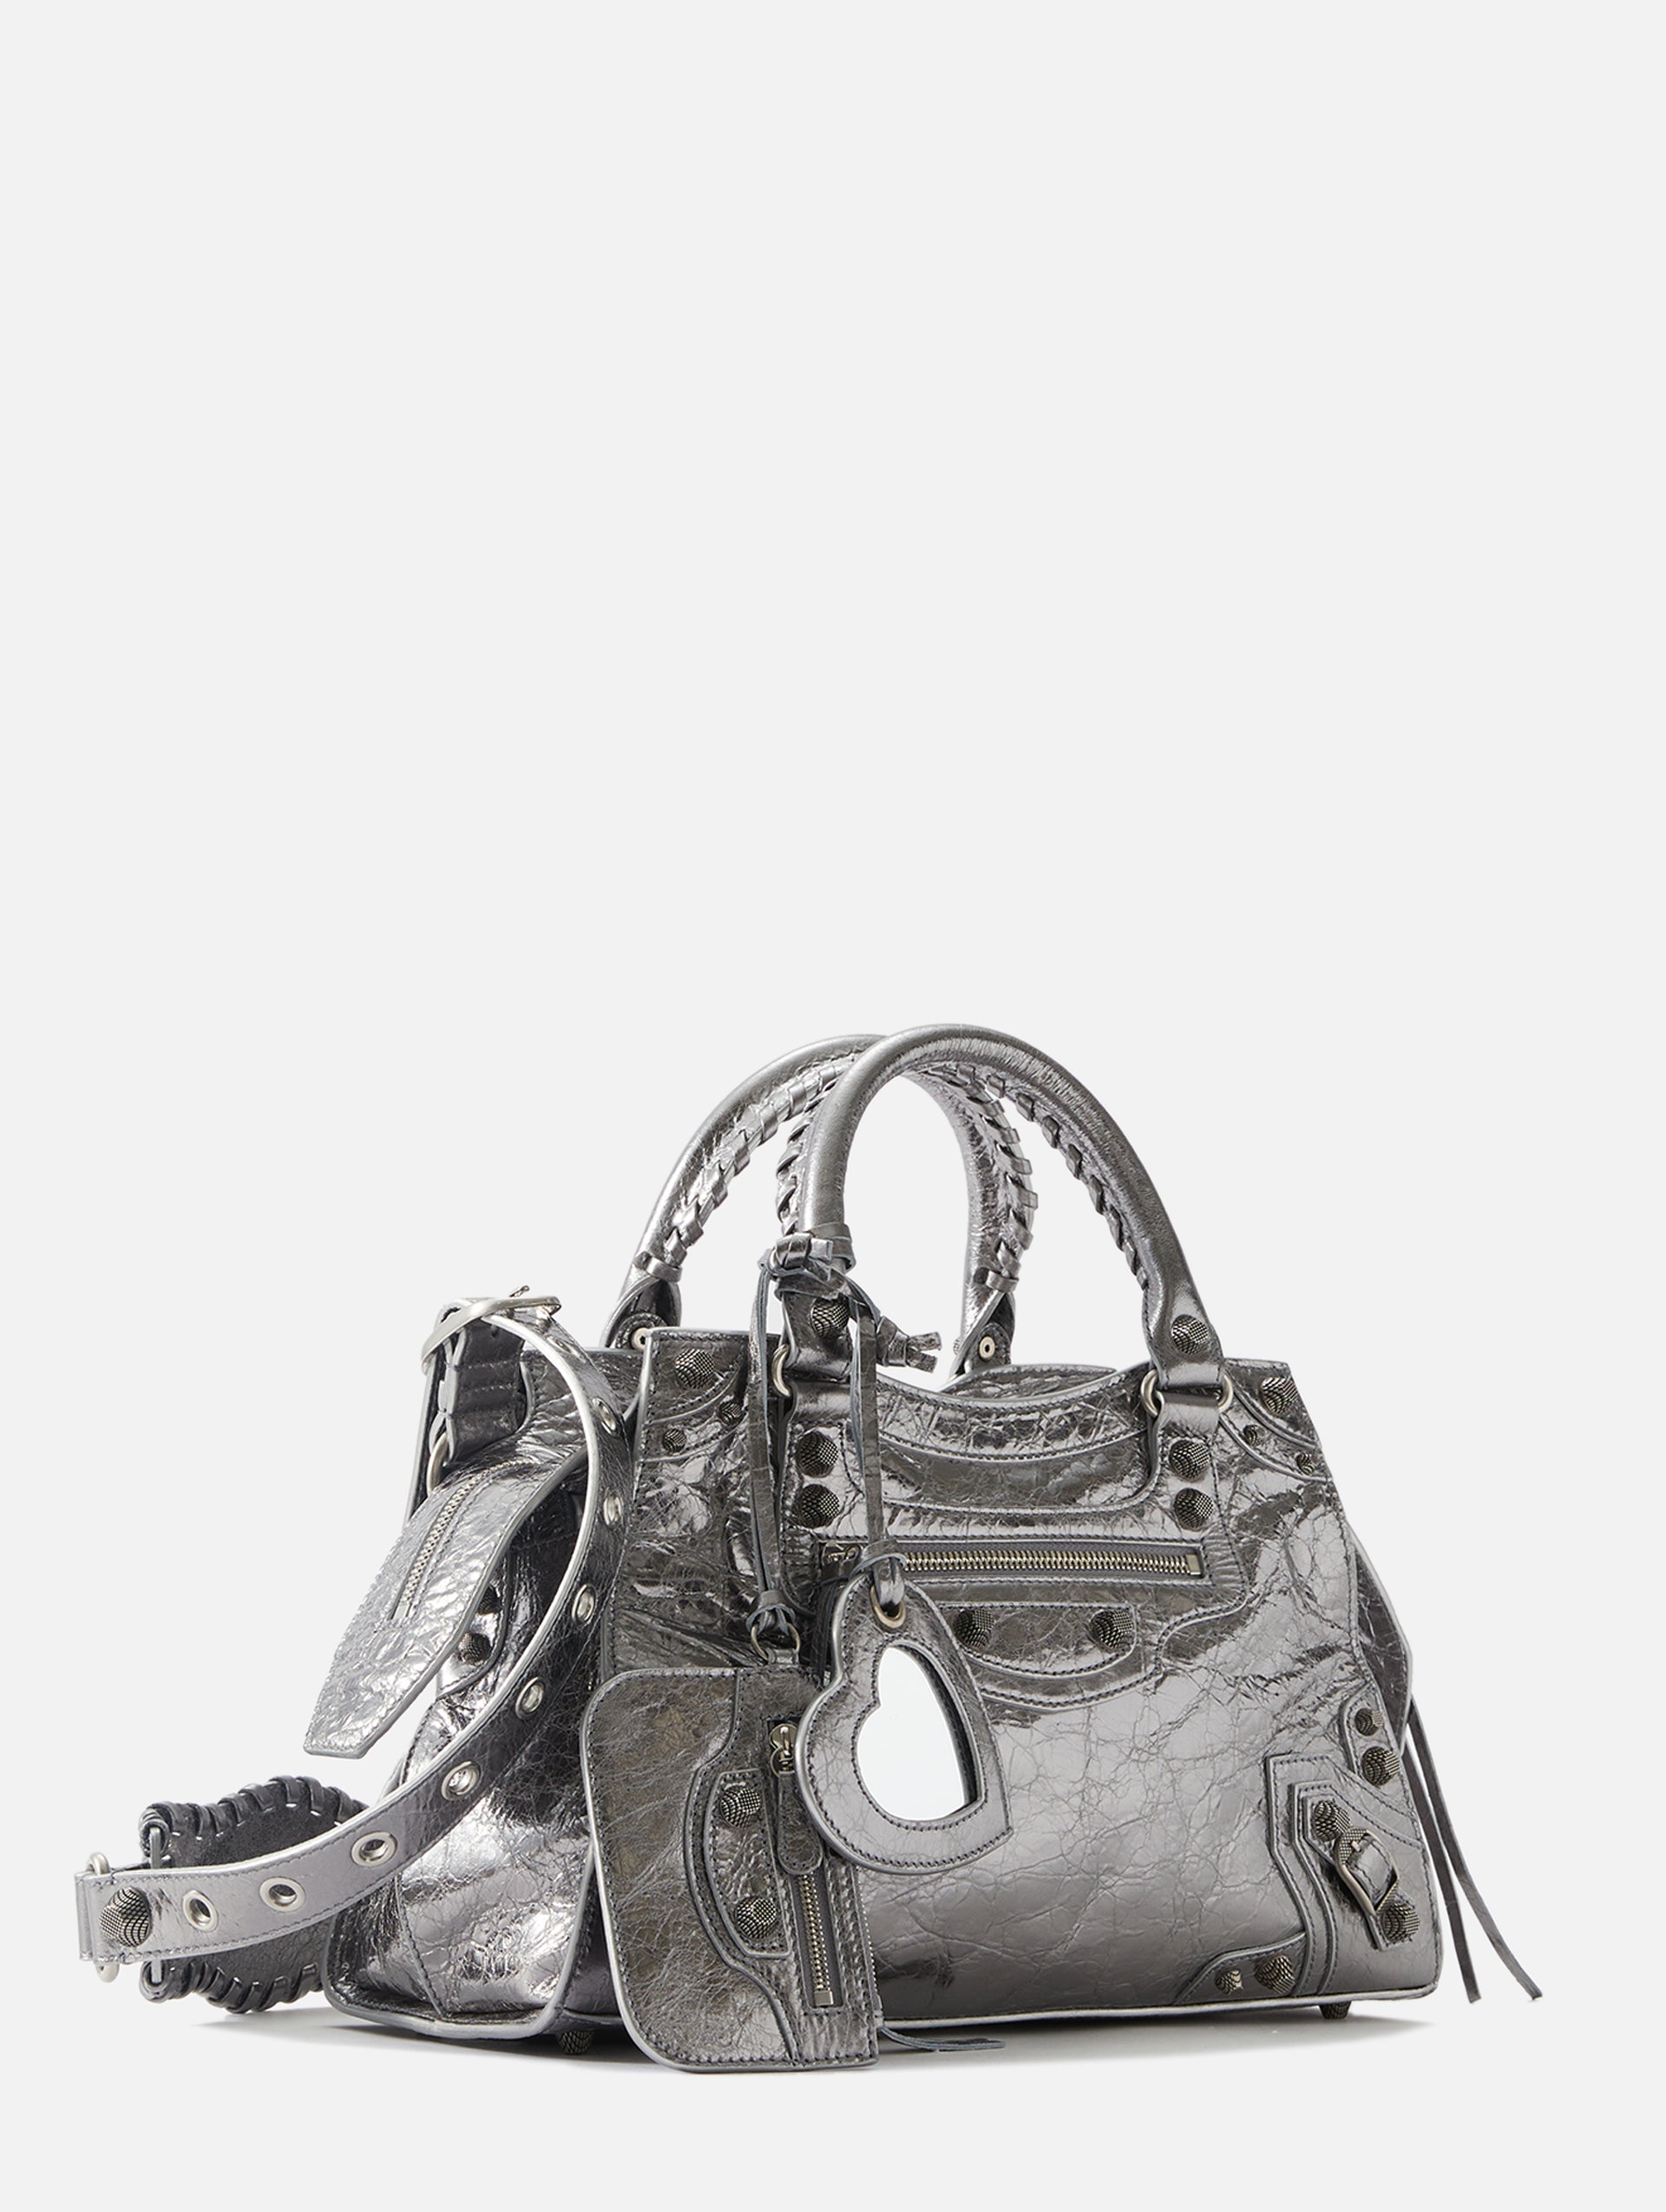 Balenciaga  Silver Leather XL City Tote Bag  VSP Consignment